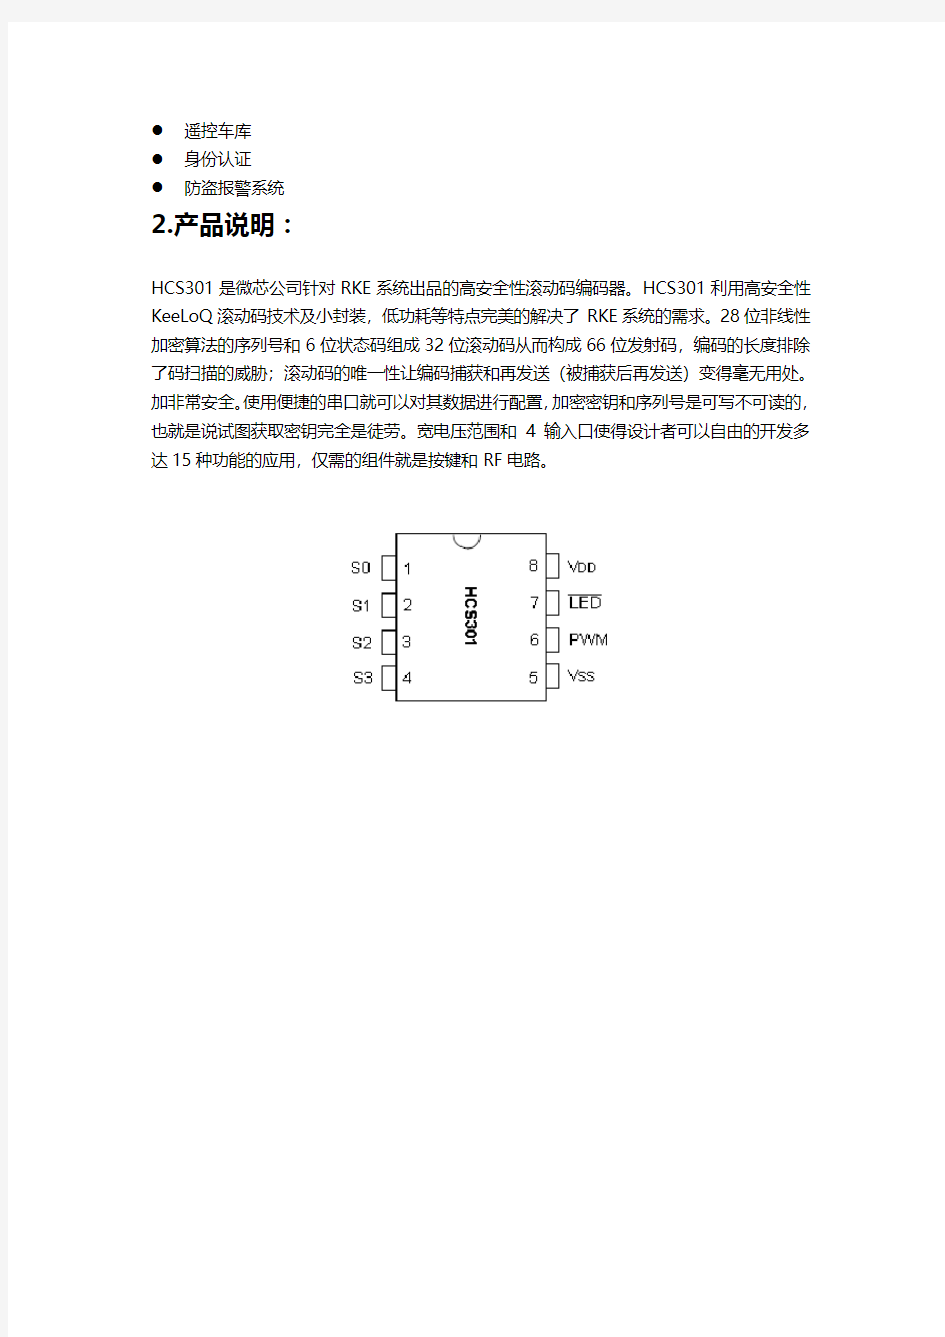 HCS301中文文档